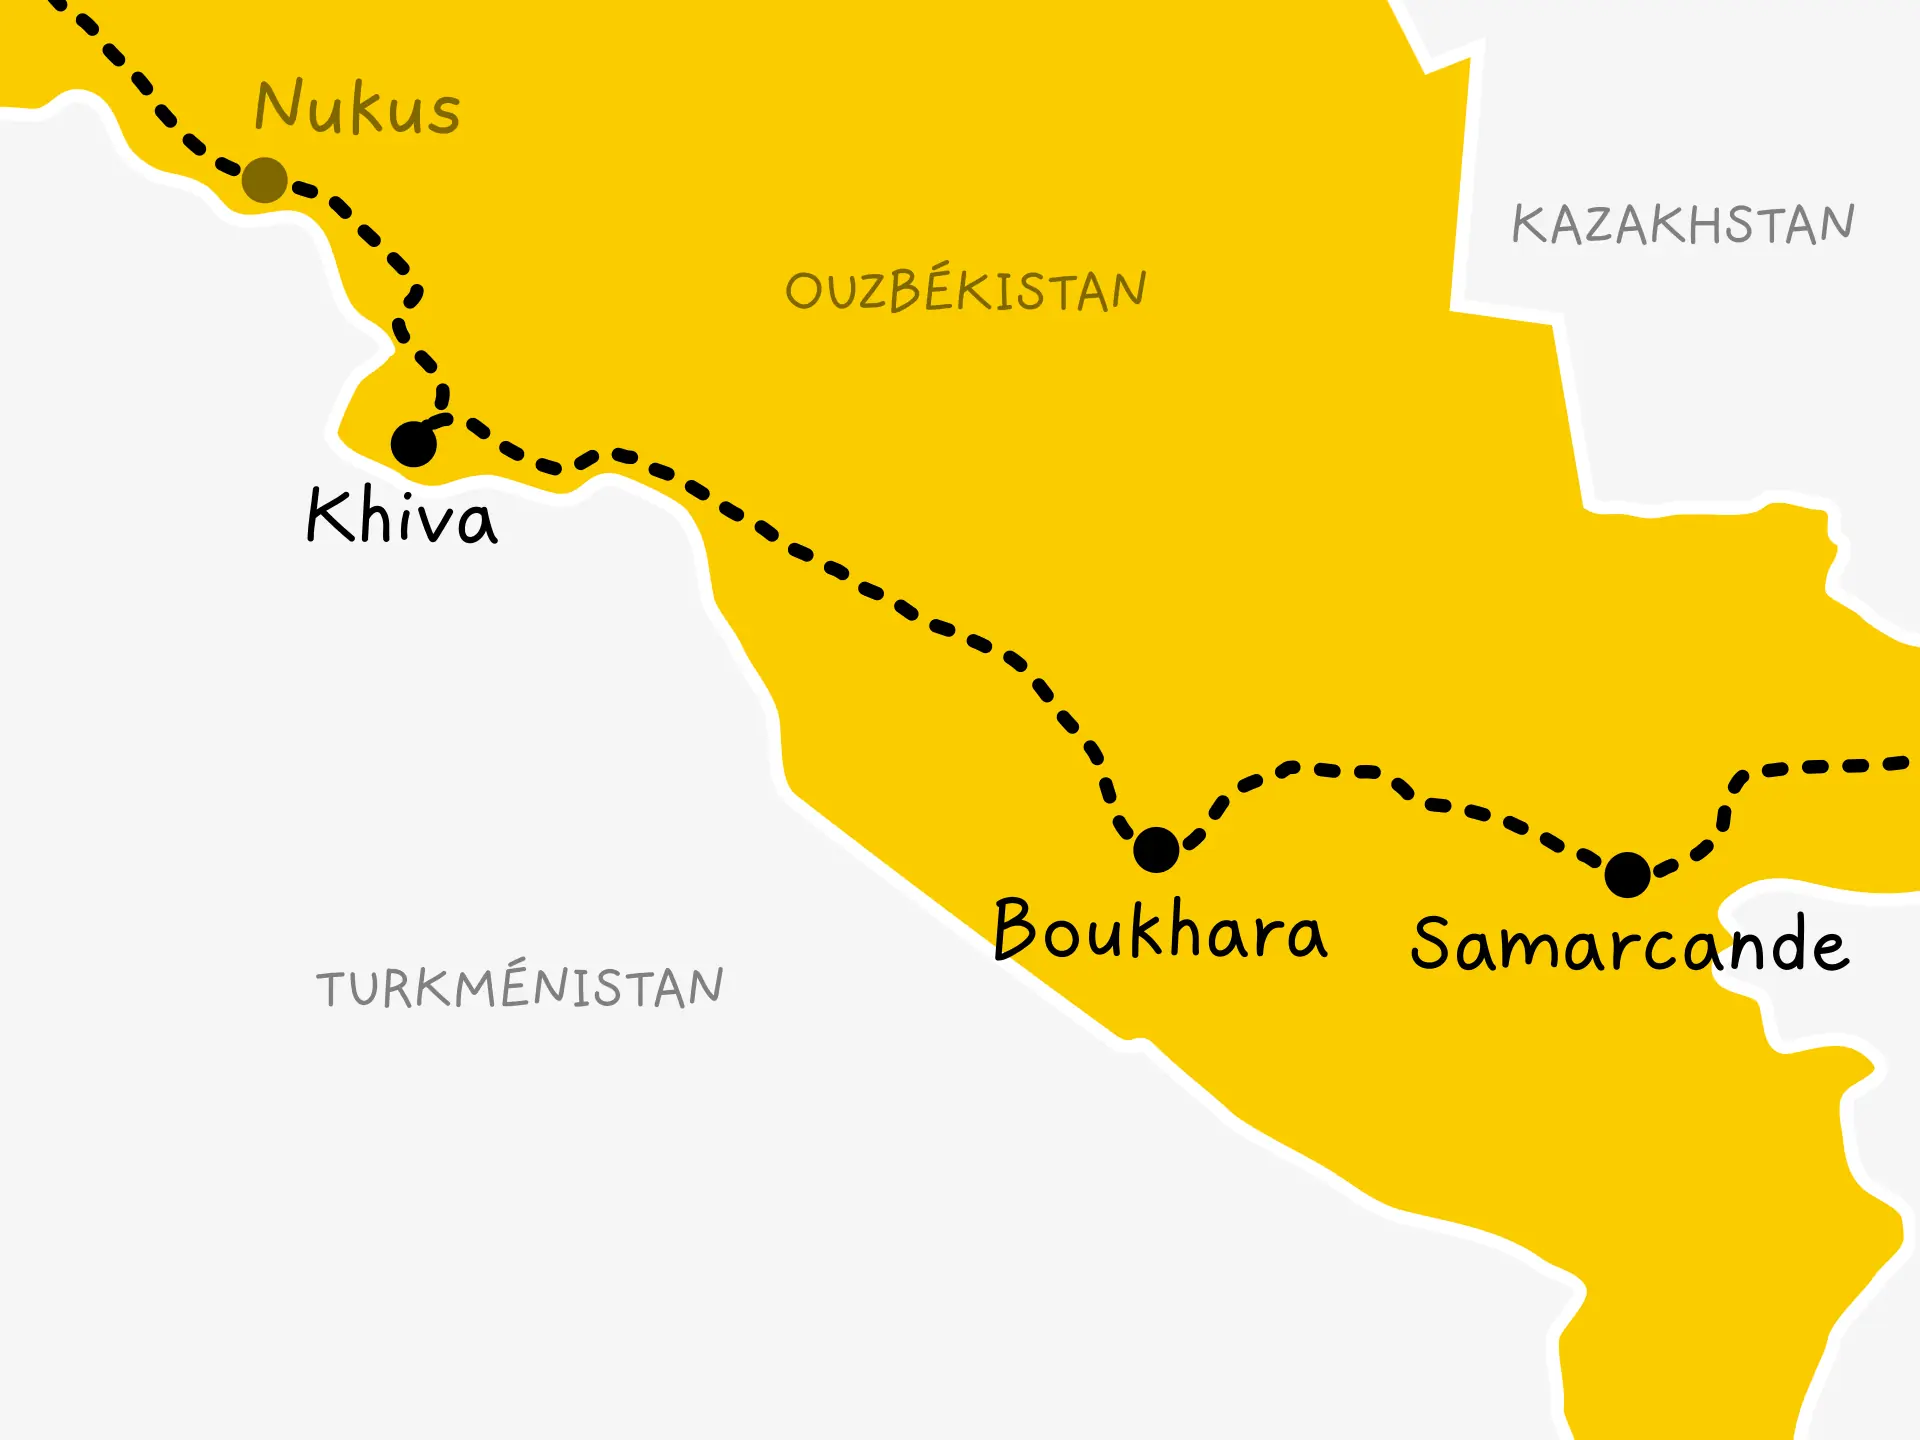 Carte de l'Ouzbékistan. Notre itinéraire qui arrive par Nukus est indiqué. Il passe par les trois grandes villes des routes de la soie : Khiva, Boukhara et Samarcande.